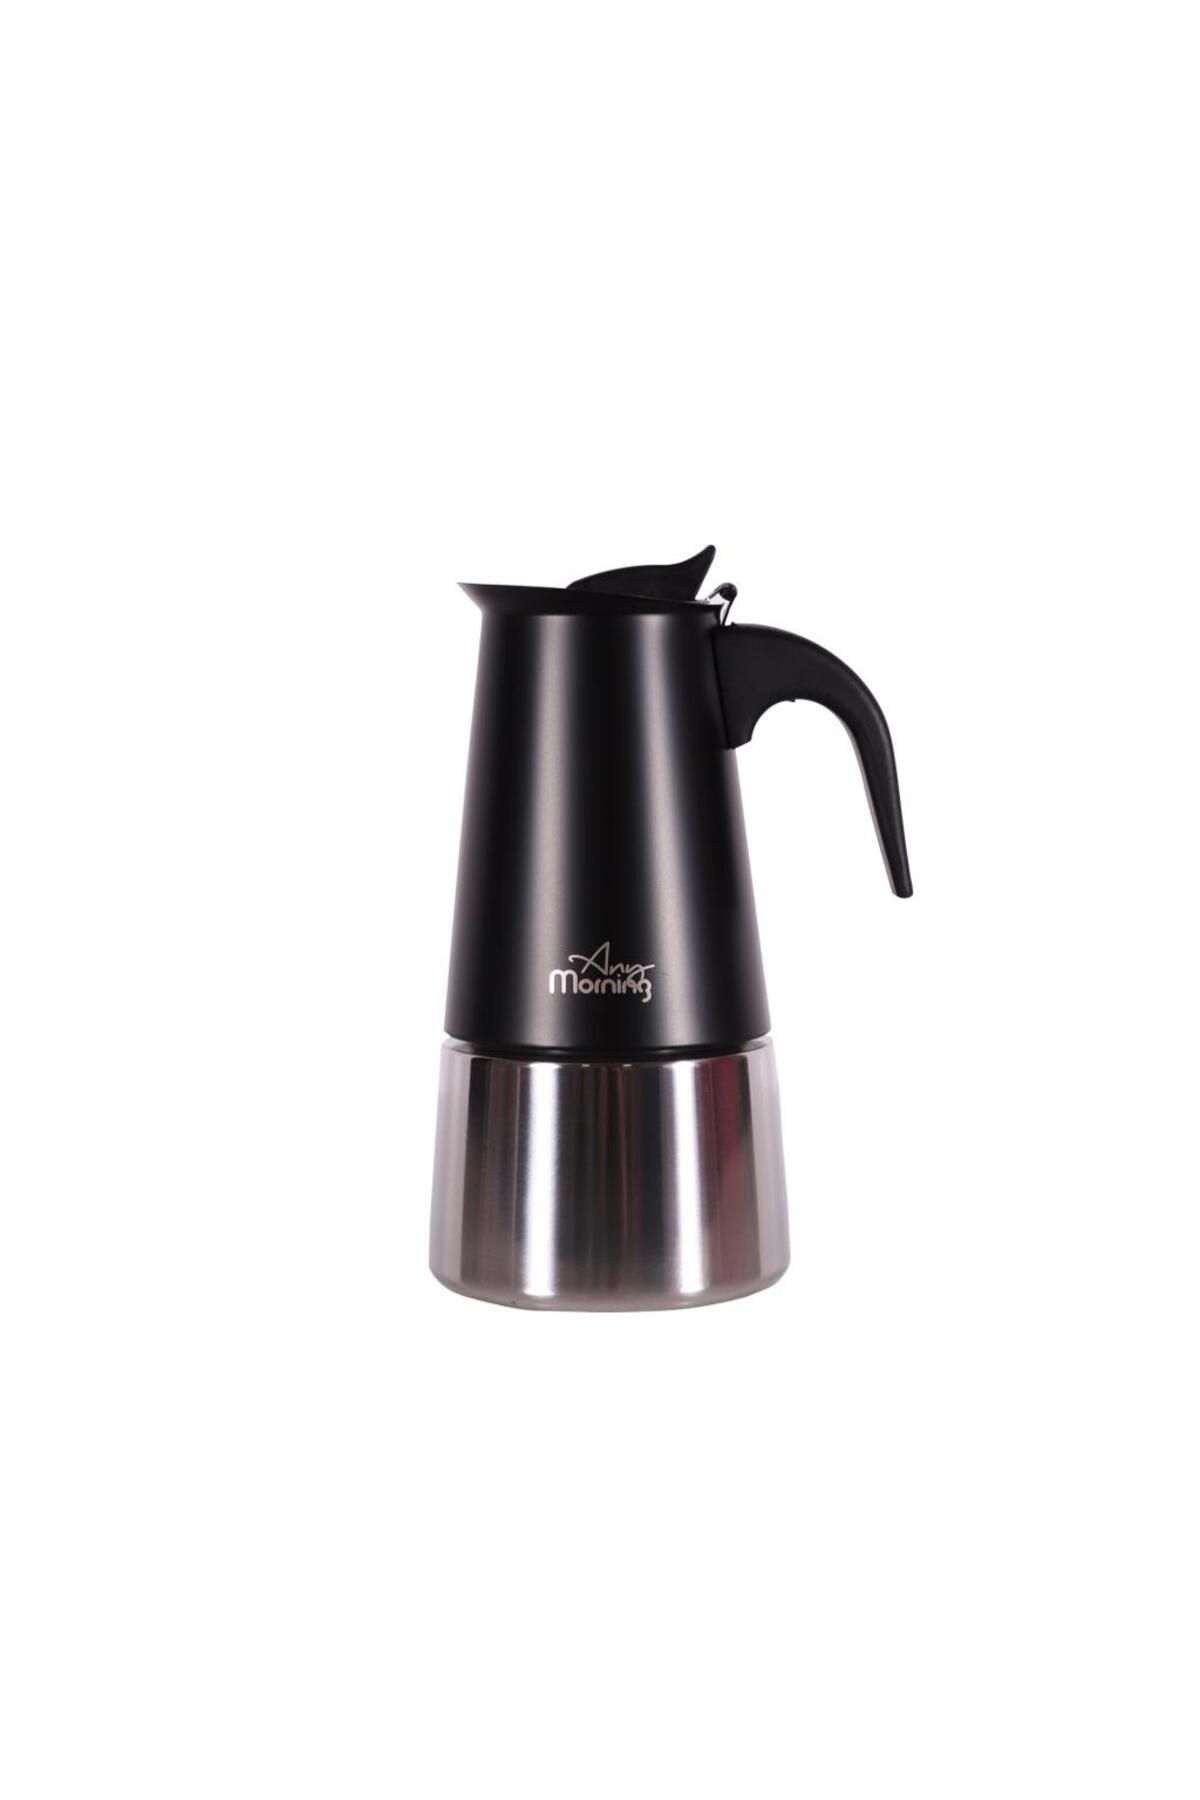 Any Morning Fe001-6 Espresso Kahve Makinesi Paslanmaz Çelik Indüksiyonlu Moka Pot 300 ml Siyah